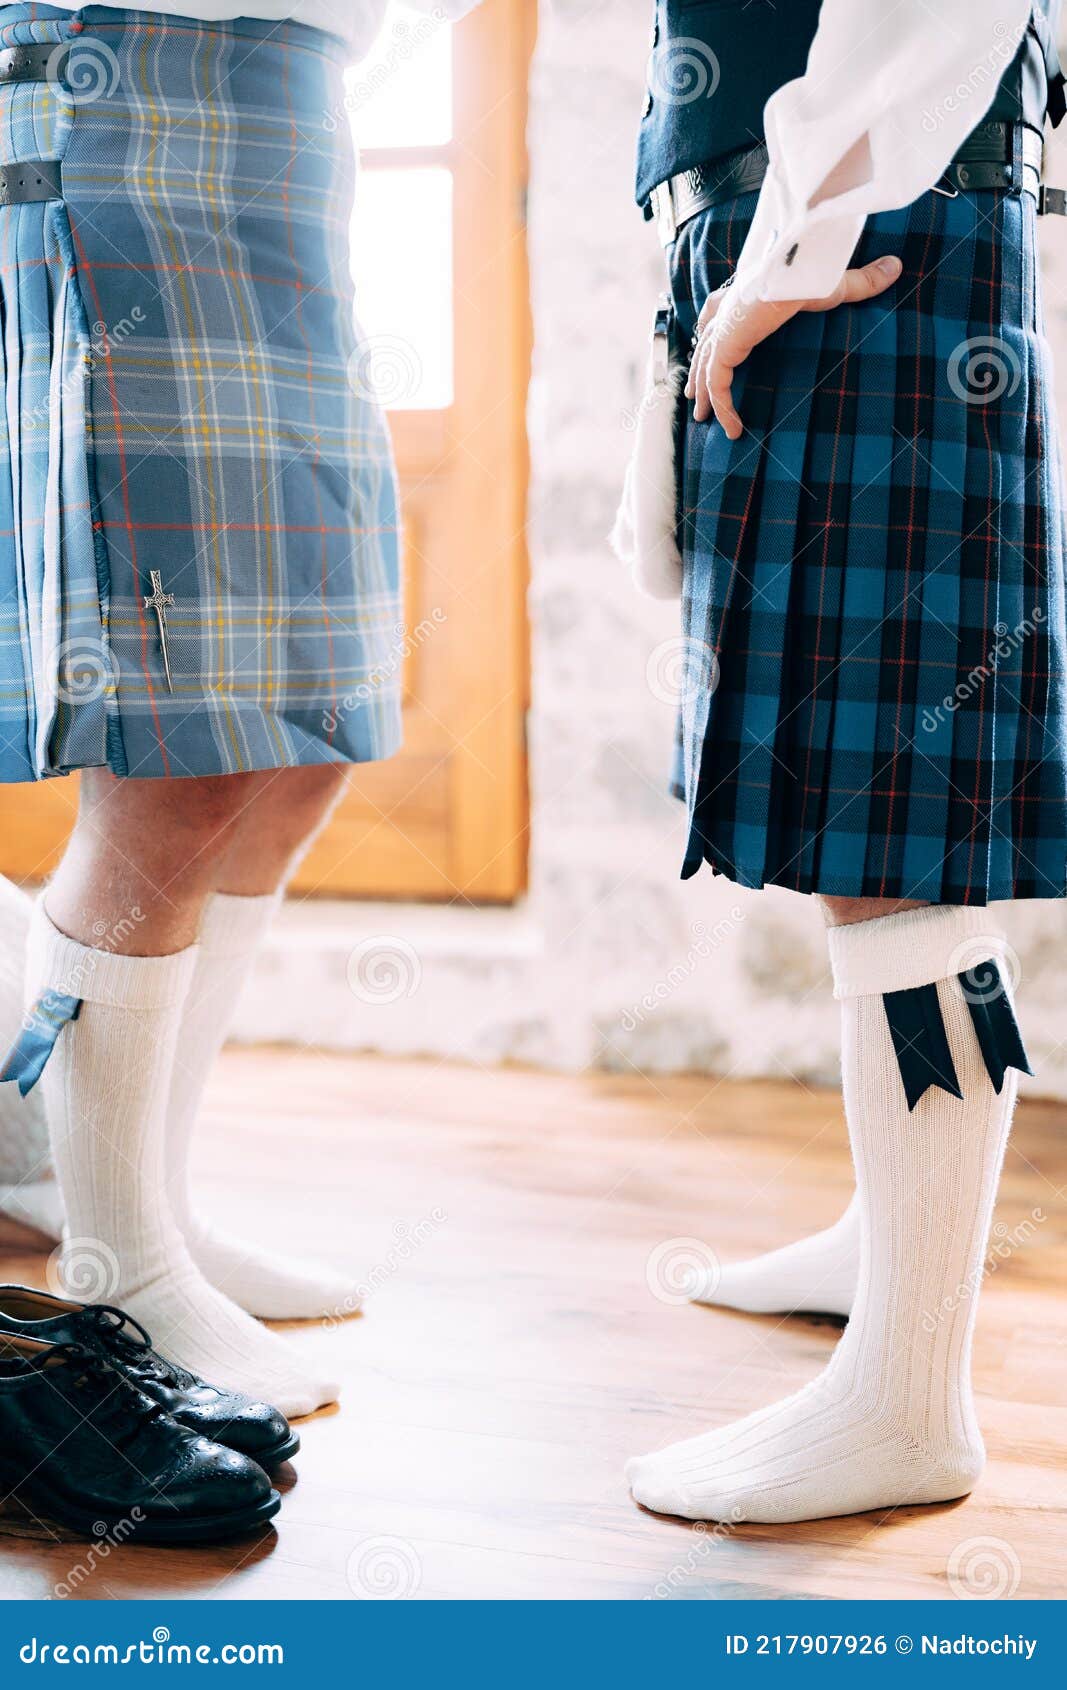 Preparándose Para Una Boda Escocesa. Dos Hombres En Kilts Esporranos Y Altas Se Paran Uno Frente Al Otro. Zapatos Con Largo Foto archivo - Imagen de ropa, zapato: 217907926